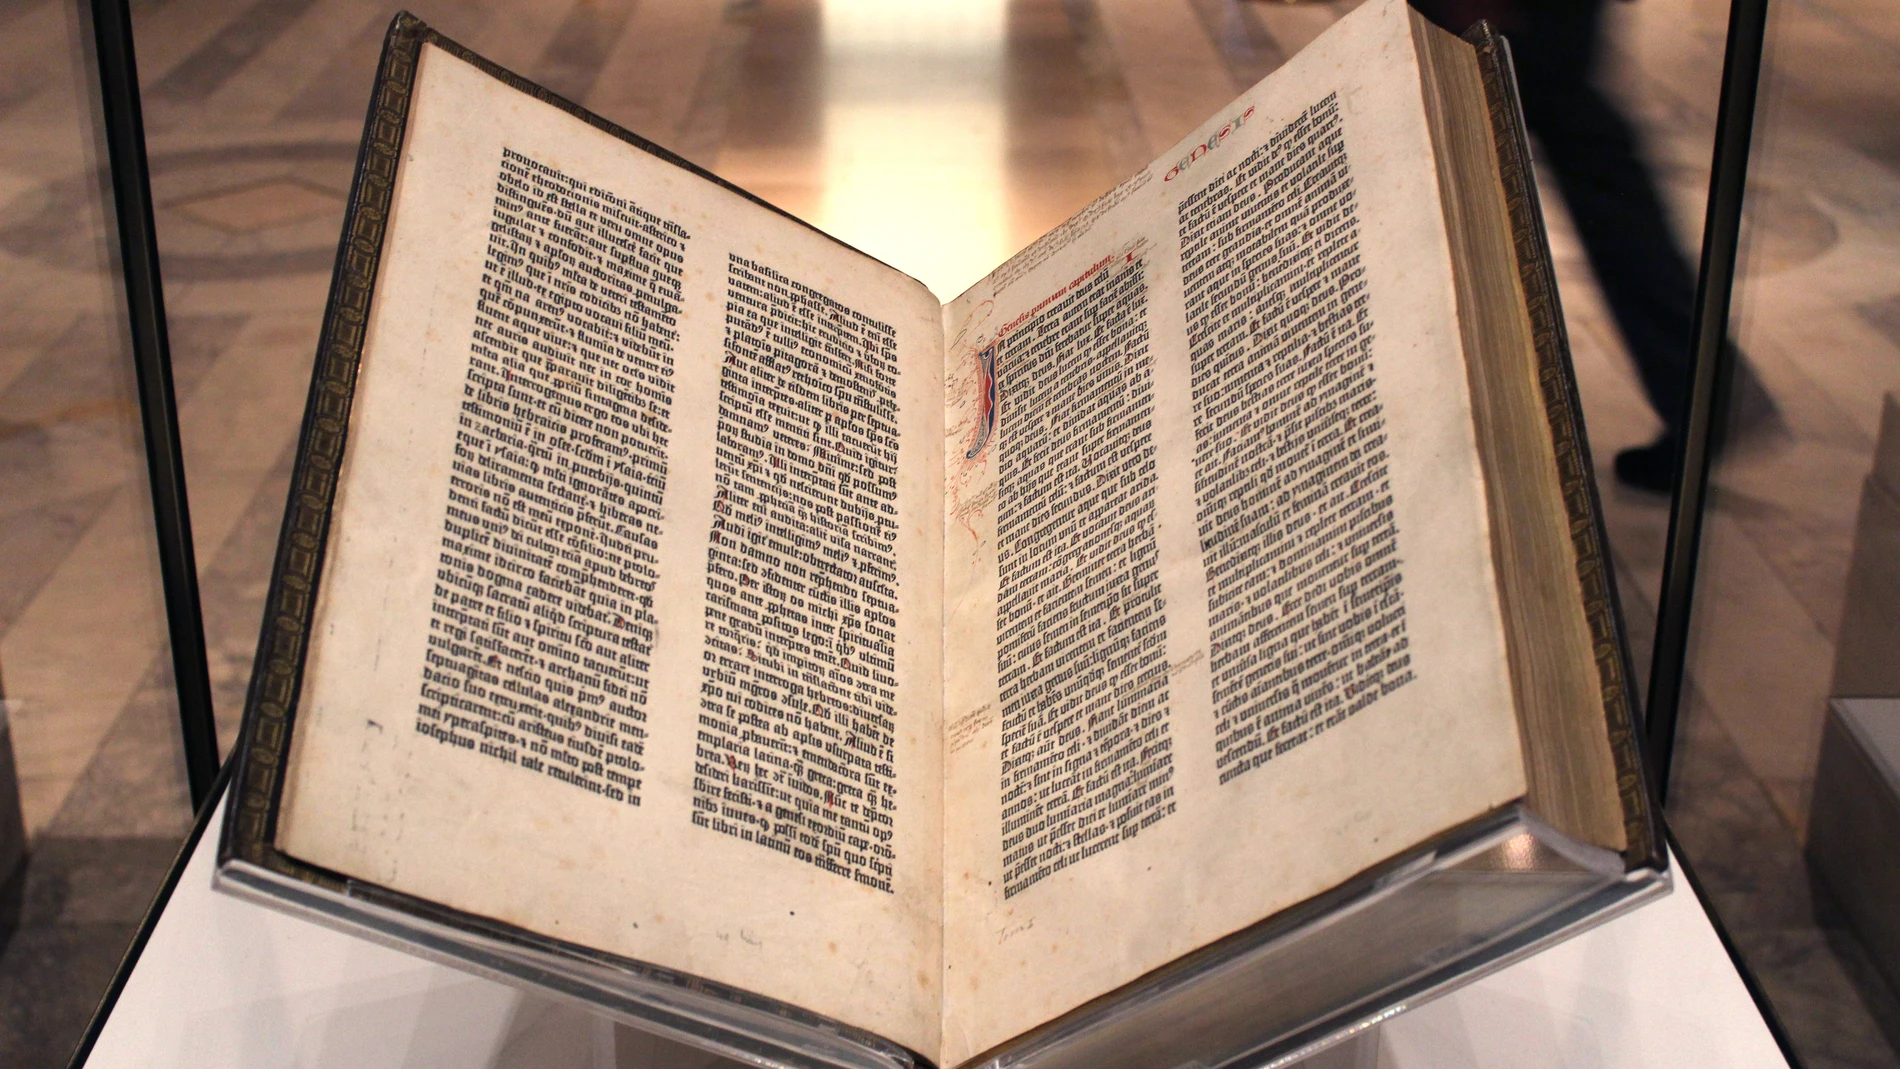 Vista de un ejemplar de la Biblia de Gutenberg, que está considerado el primer libro impreso